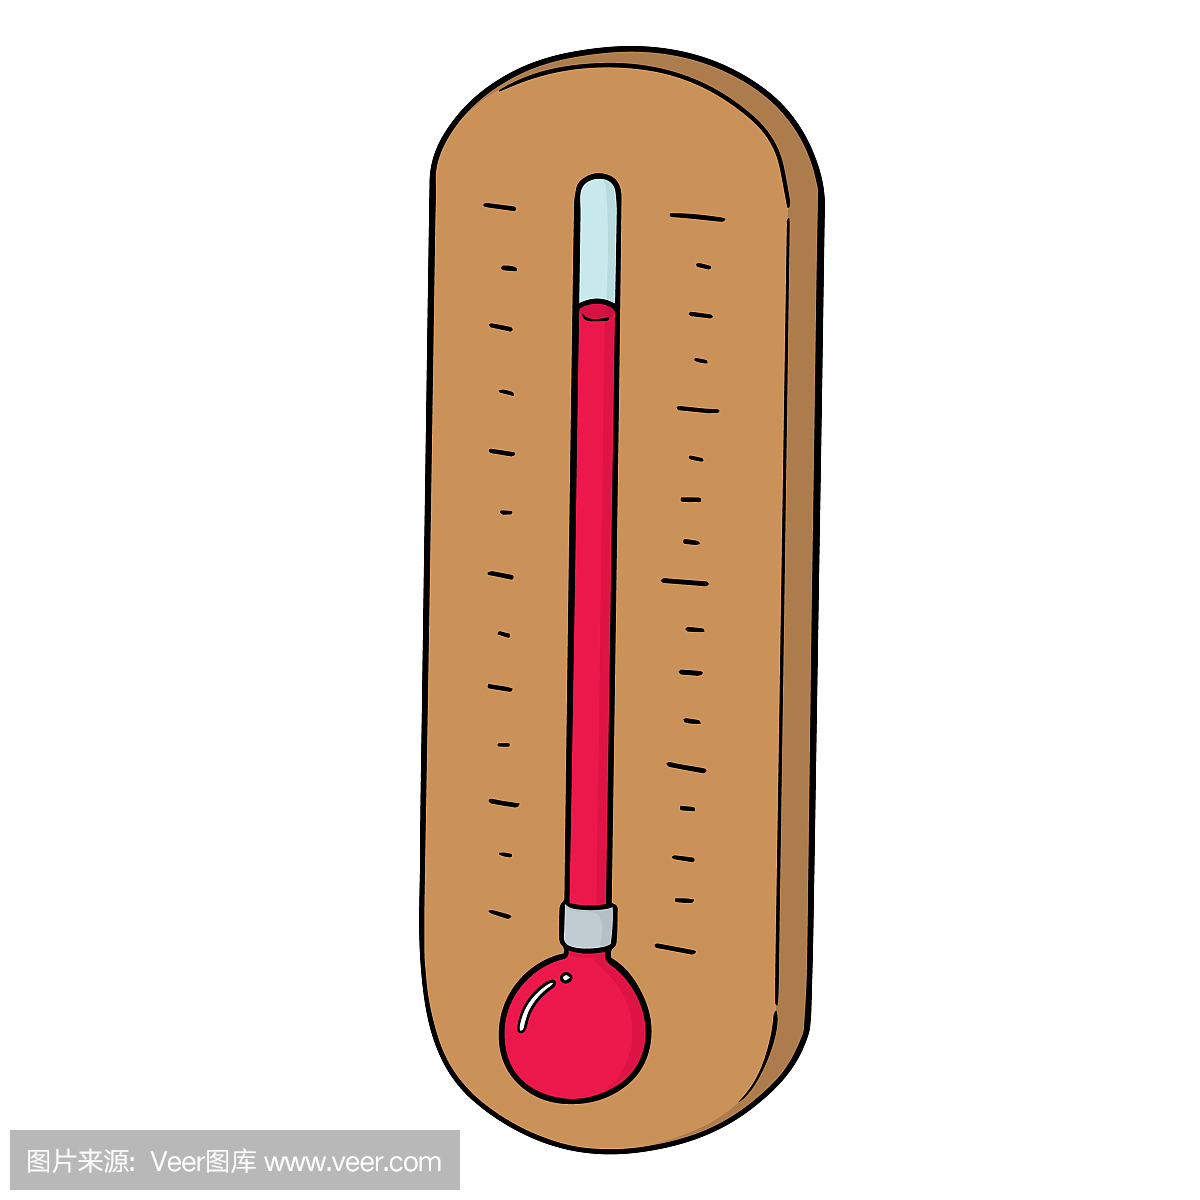 华氏温标,华氏温度,华氏温度计,华氏温度计的